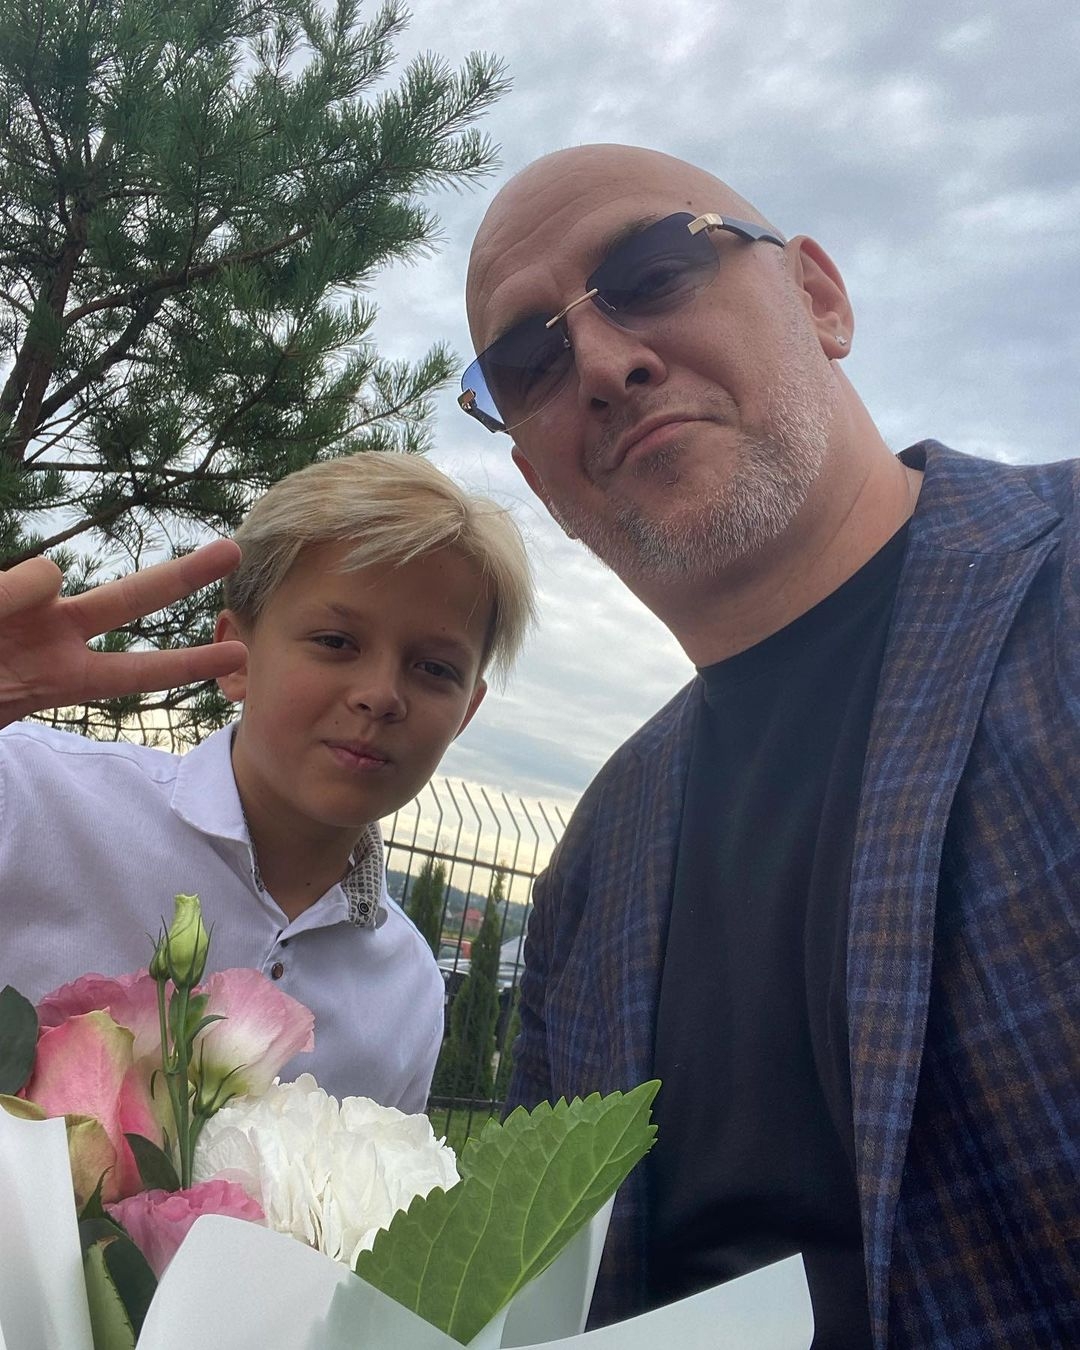 Instagram-репортаж: как украинские знаменитости проводили детей в школу